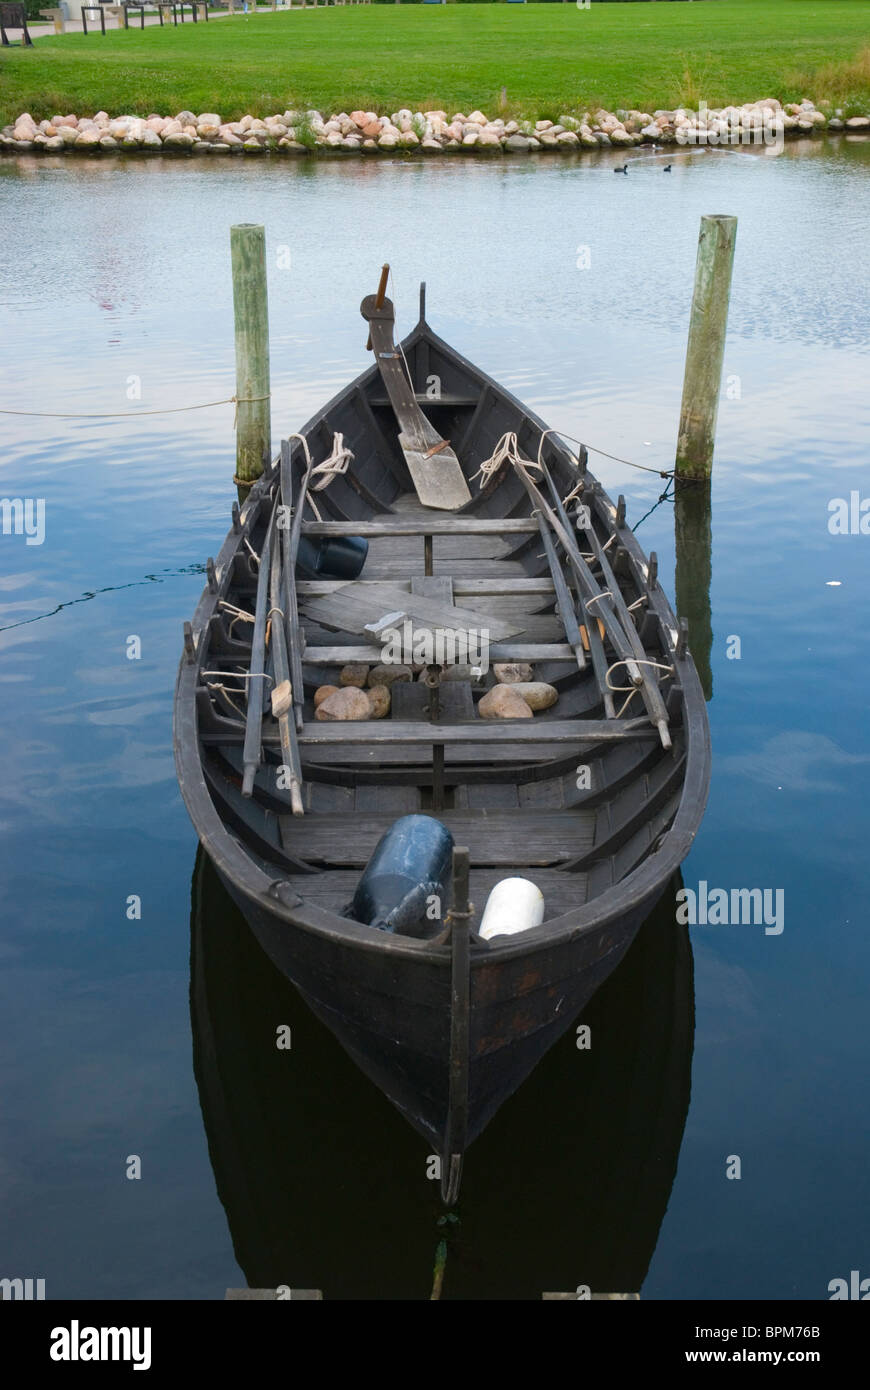 Réplique d'Ravnur bateau viking de Îles Féroé au fjord de Roskilde Roskilde Danemark Europe lac Banque D'Images